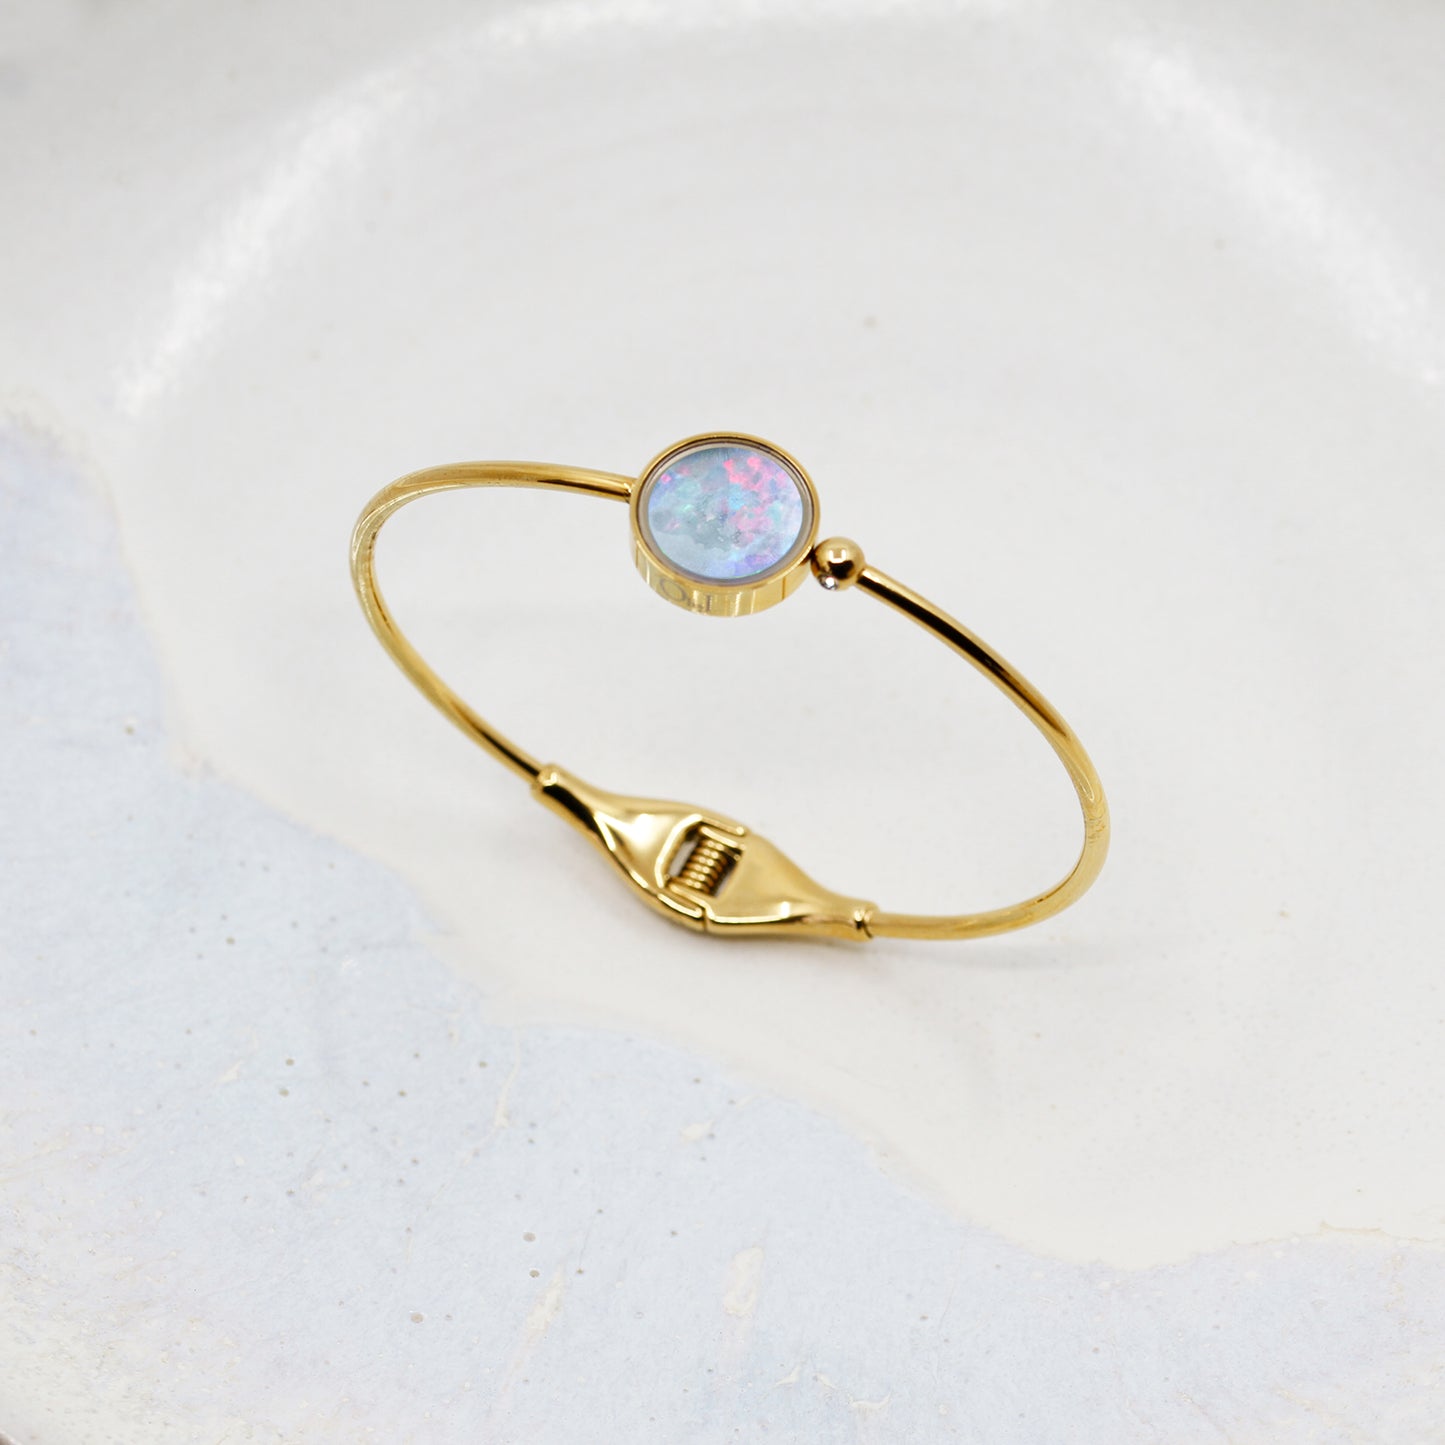 Australian Opal Bracelet